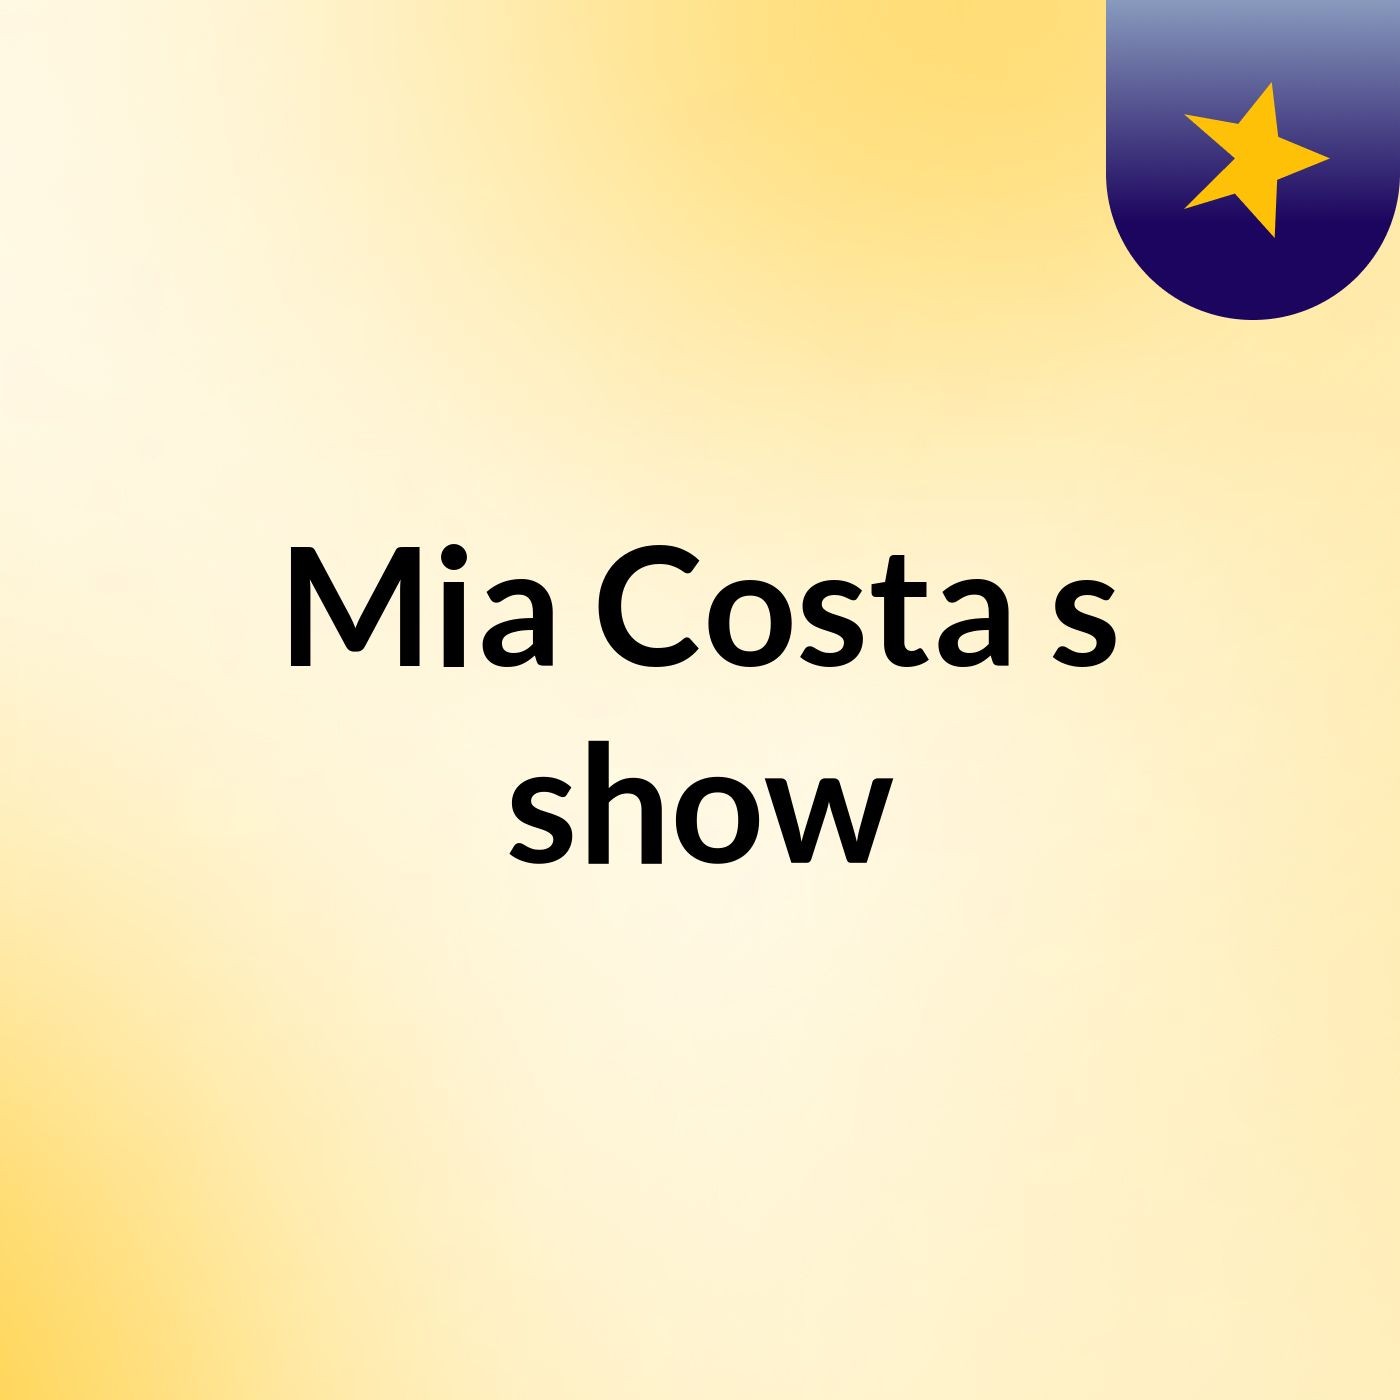 Mia Costa's show